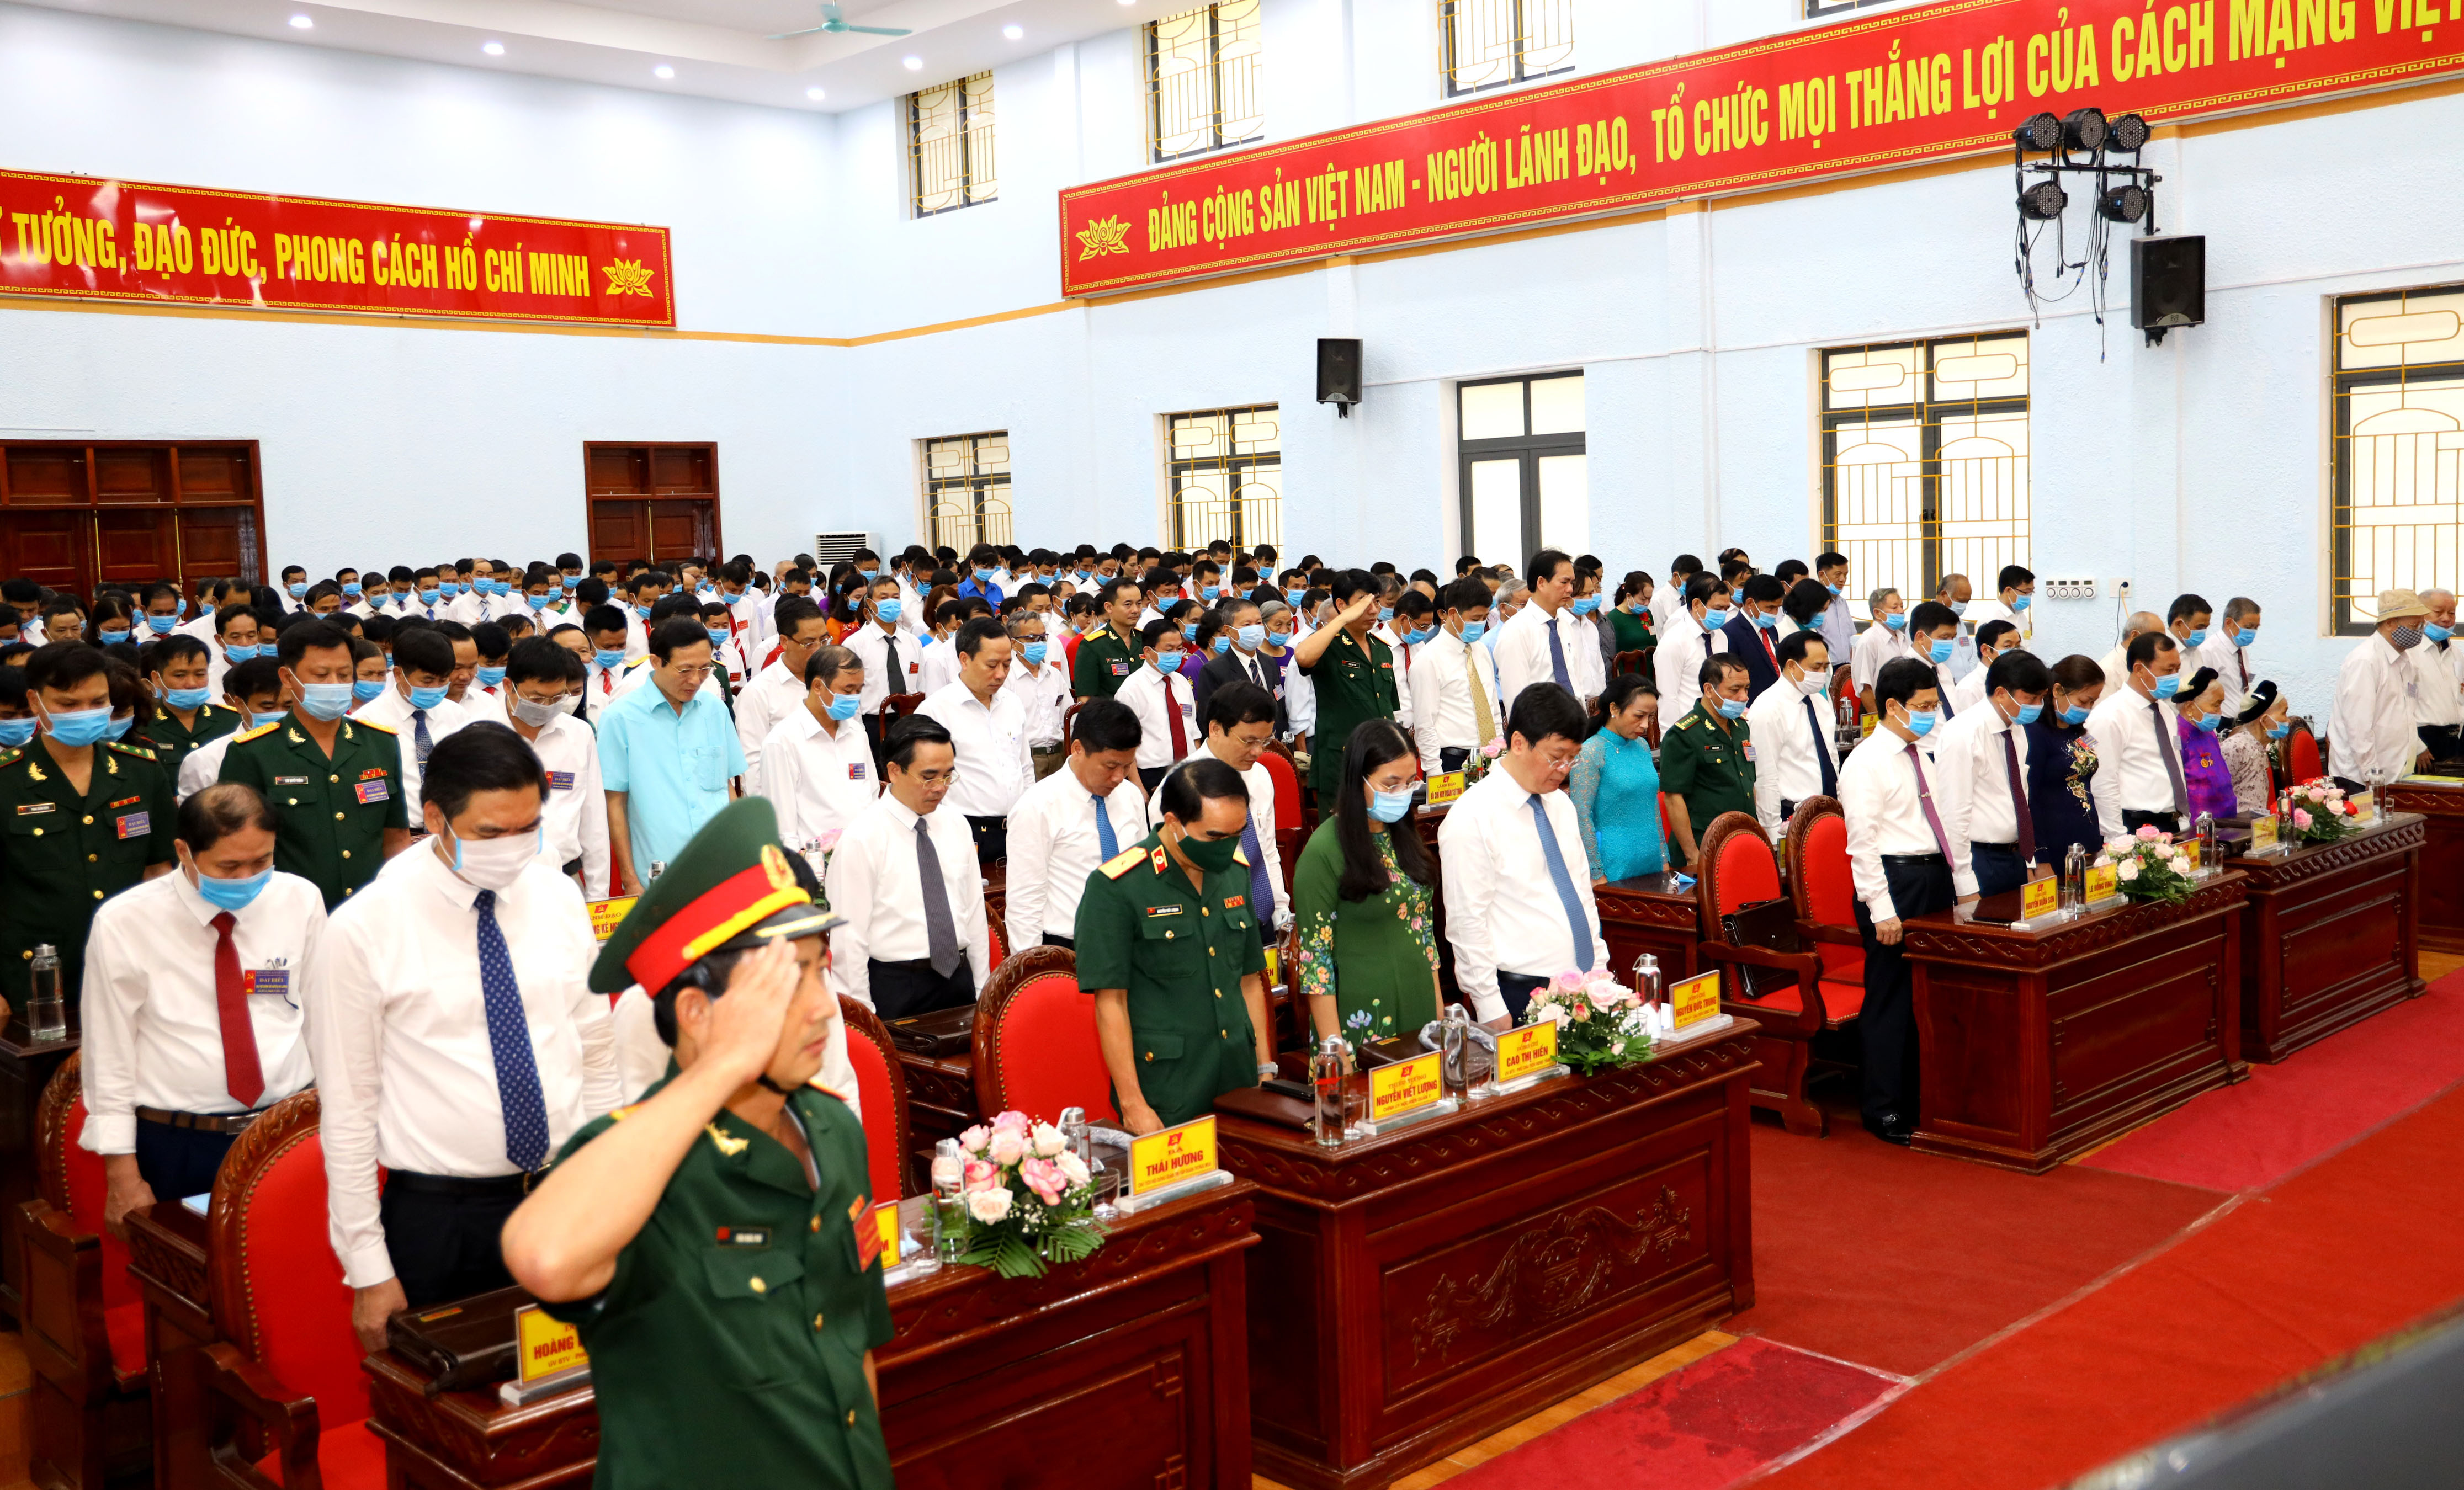 Đại hội thực hiện nghi thức chào cờ, tưởng niệm Chủ tịch Hồ Chí Minh, các anh hùng liệt sỹ đã hy sinh vì độc lập dân tộc, hòa bình của Tổ quốc và tưởng niệm nguyên Tổng Bí thư Lê Khả Phiêu. Ảnh Nguyên Nguyên